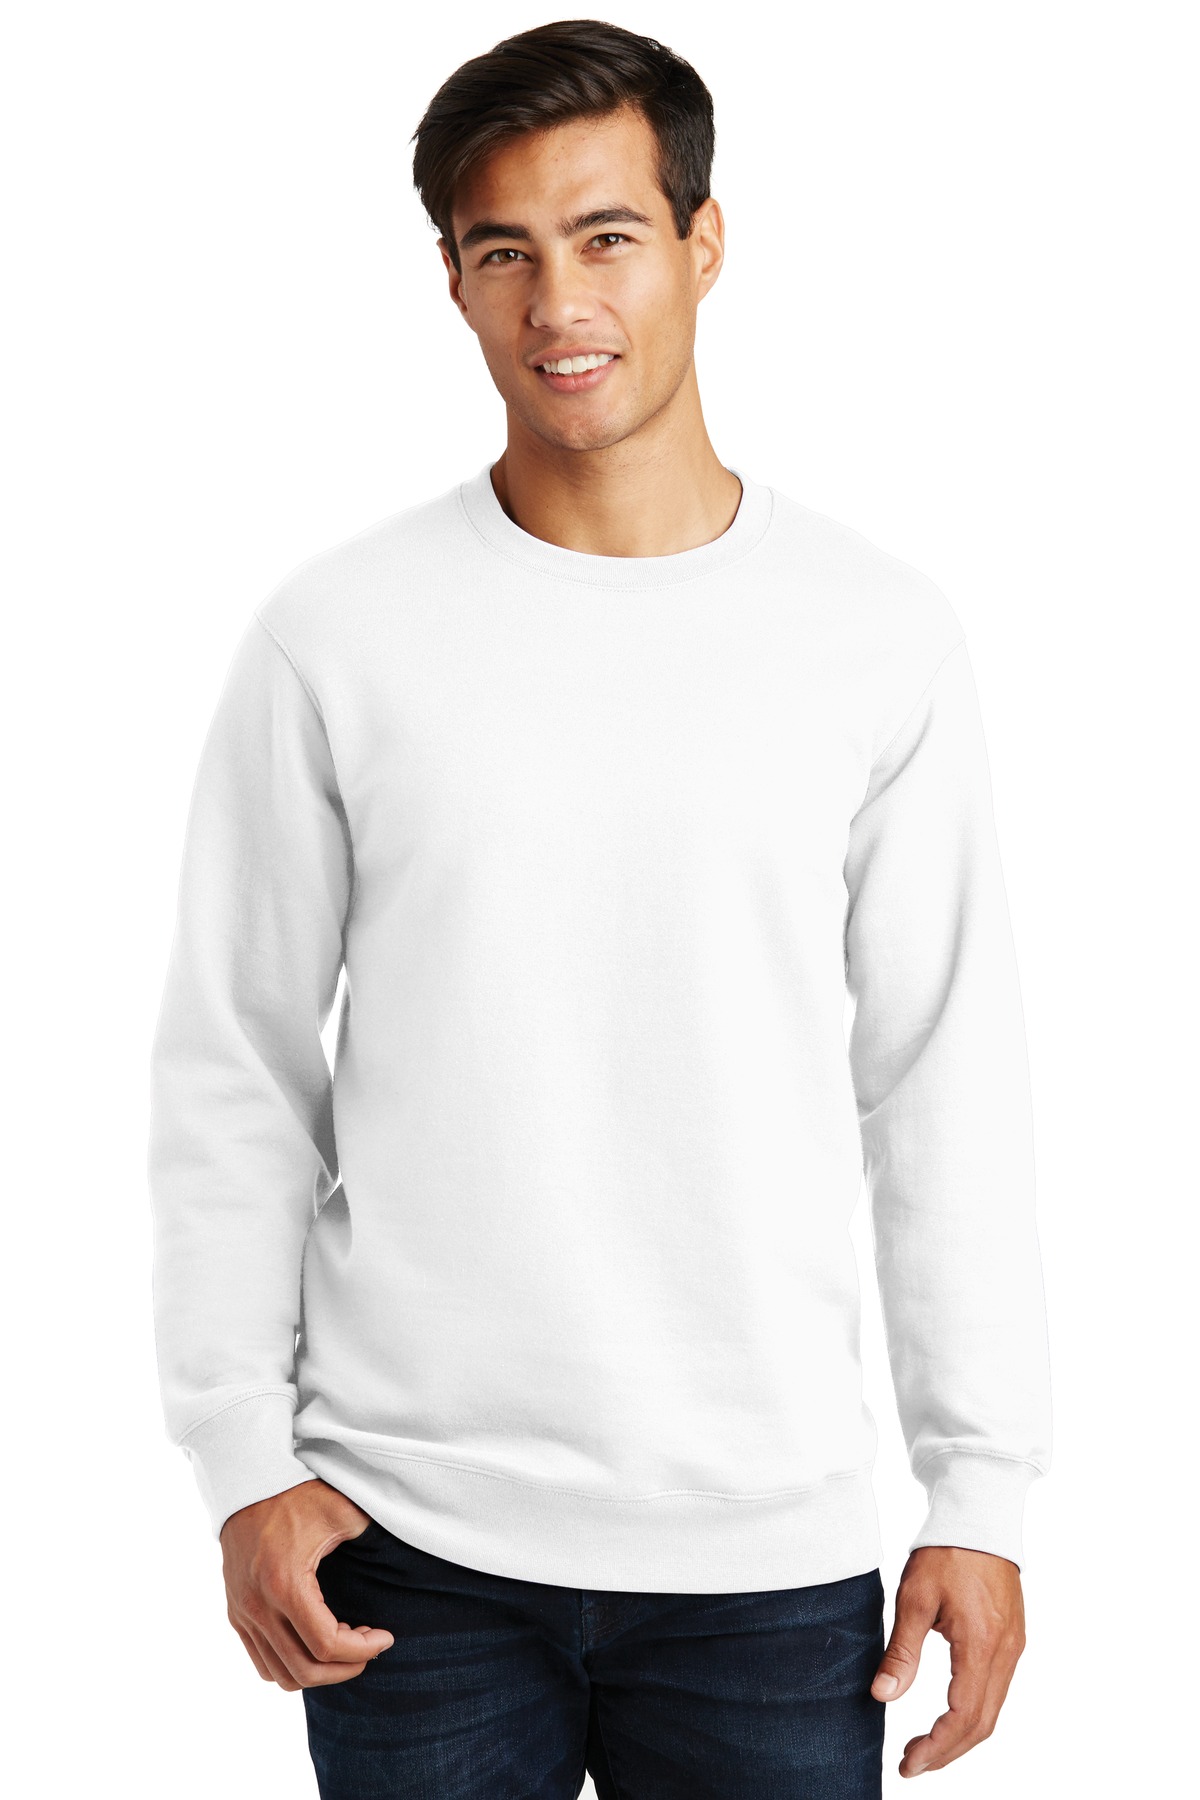 Port & Company Hospitality Sweatshirts & Fleece ® Fan Favorite Fleece Crewneck Sweatshirt.-Port & Company